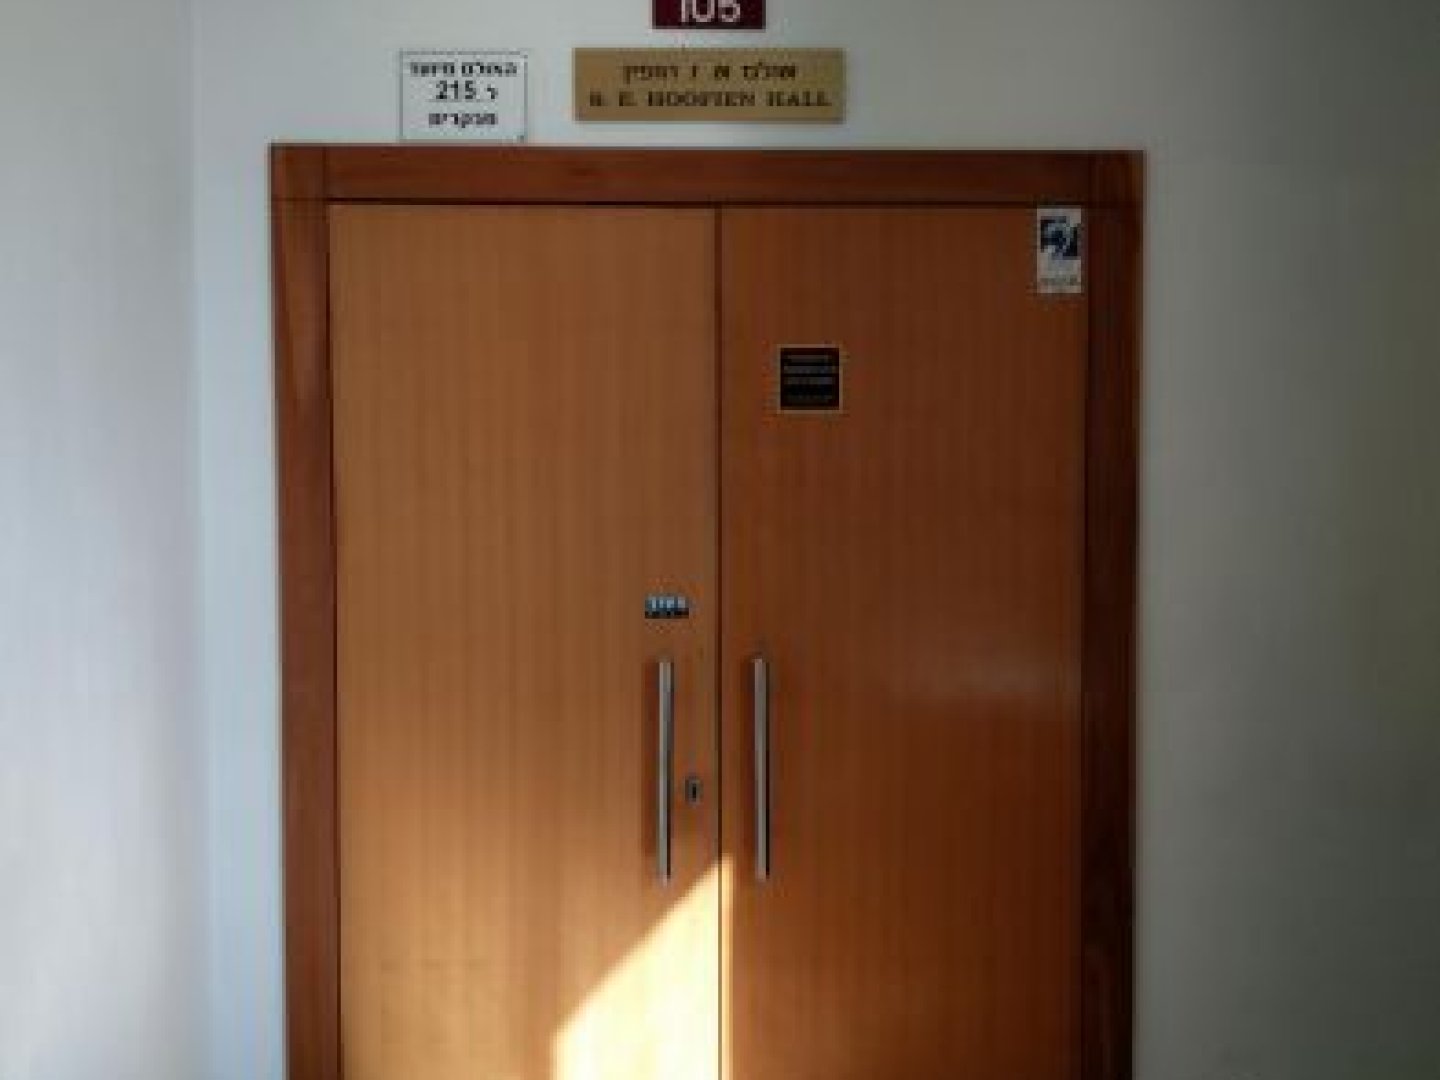 אוניברסיטת תל-אביב - טרובוביץ - משפטים - חדר 105 אולם הופין - תמונה 1